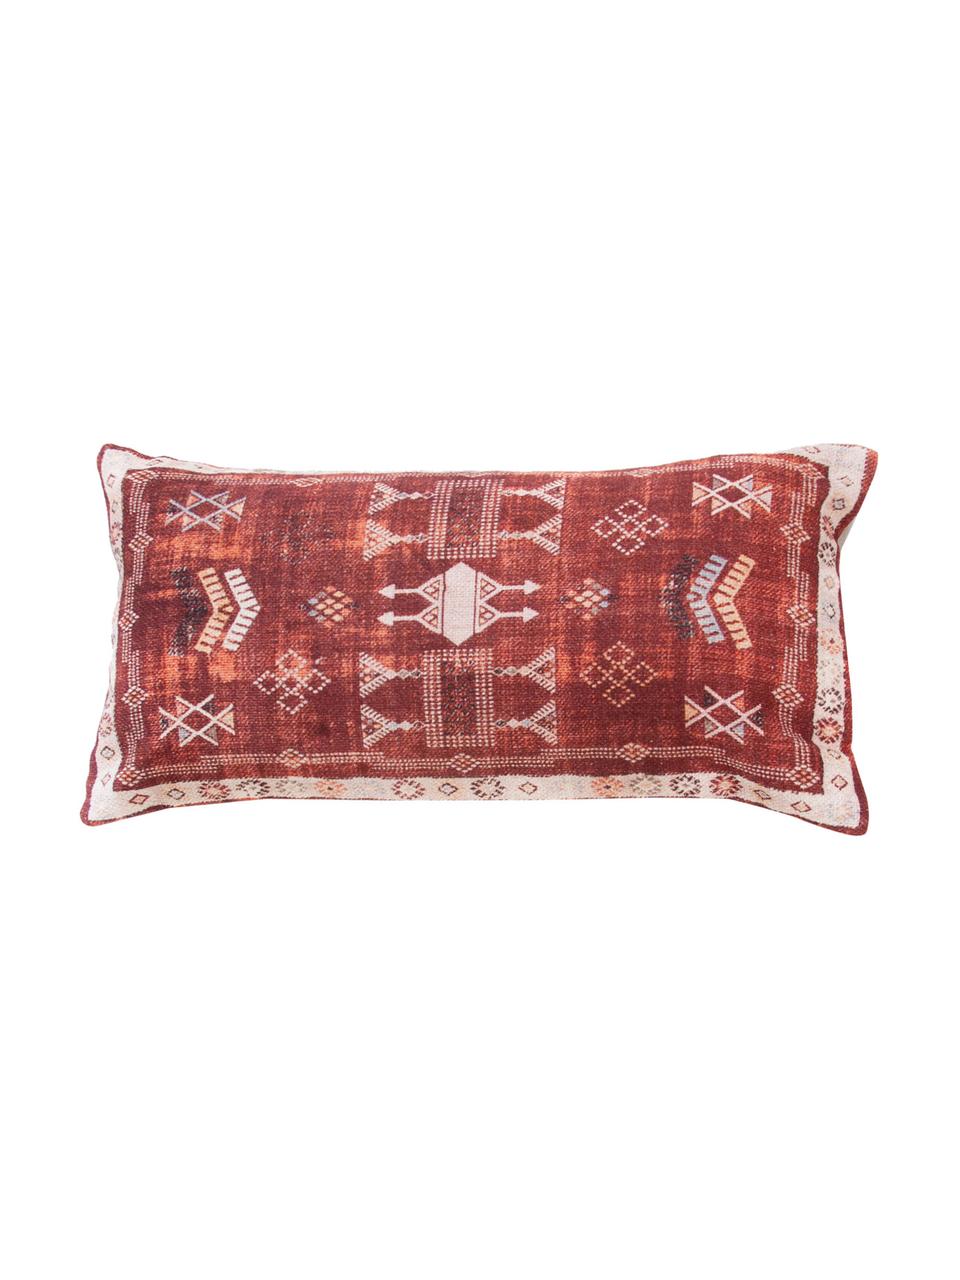 Poszewka na poduszkę  Tanger, 100% bawełna, Czerwony, beżowy, S 30 x D 60 cm